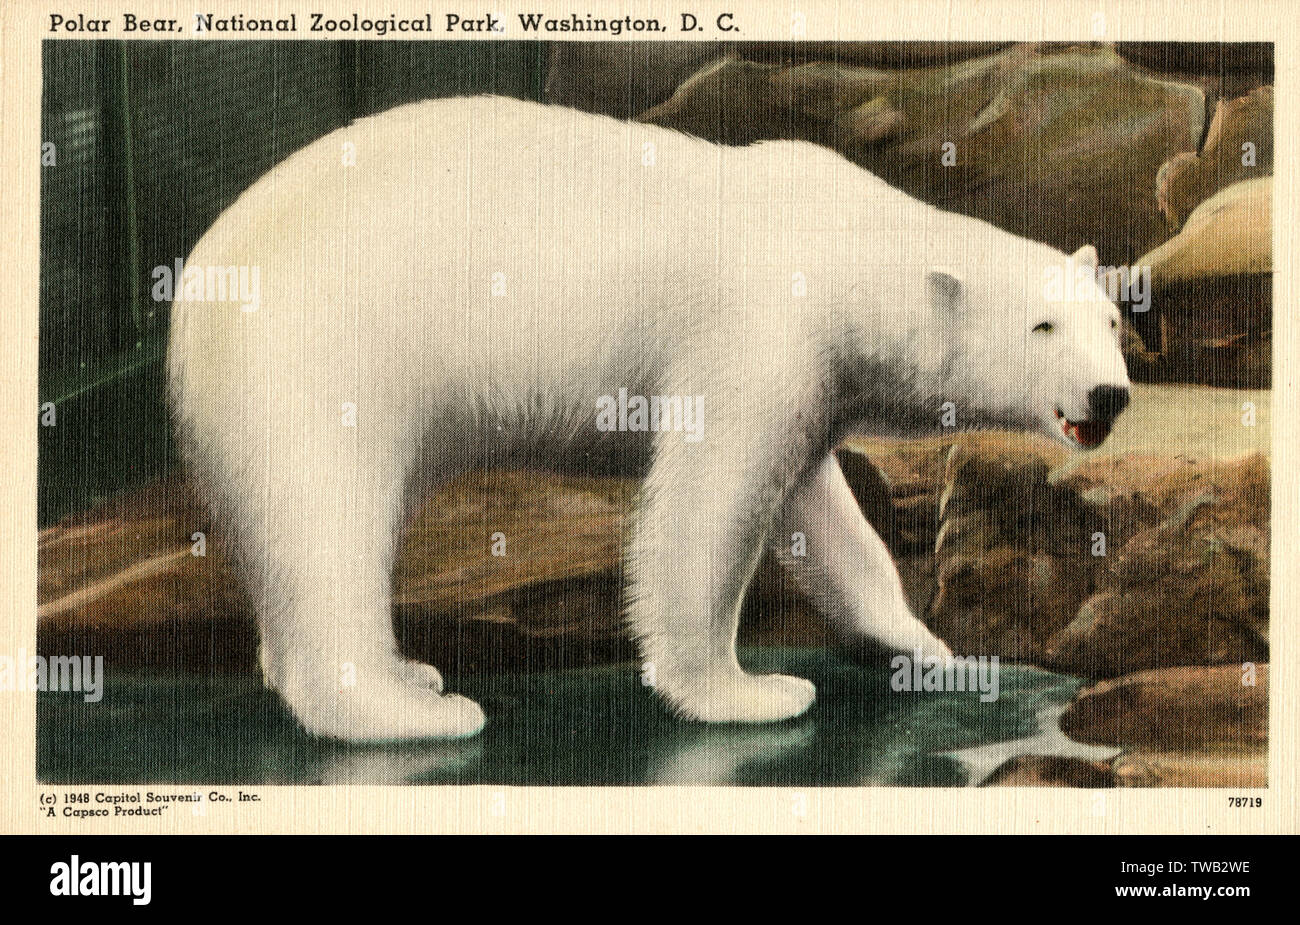 Orso polare al Parco Zoologico Nazionale - Washington D.C. Foto Stock